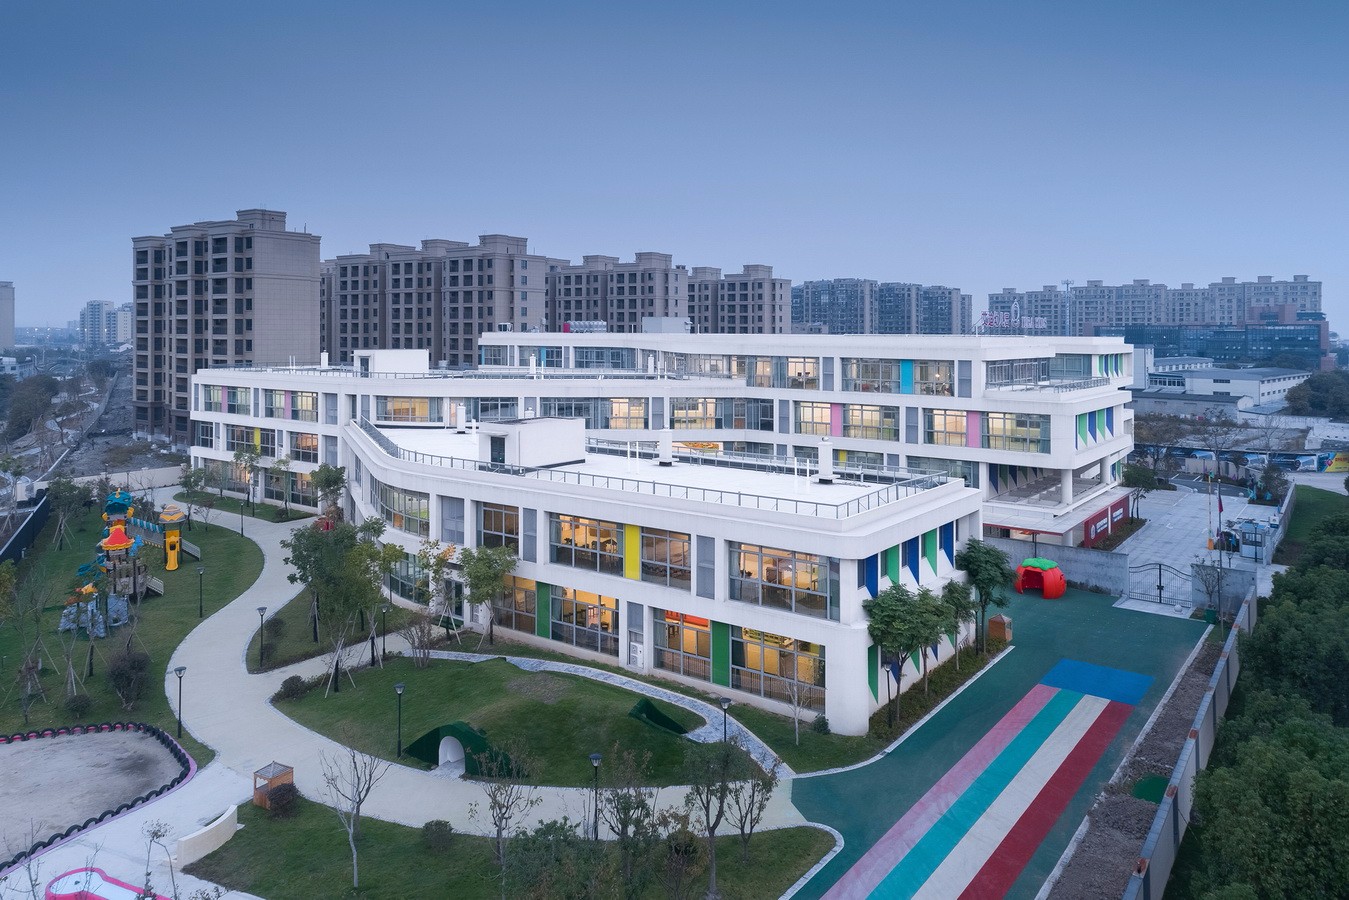 浙江宁波艾迪国际幼儿园建筑设计/格筑设计